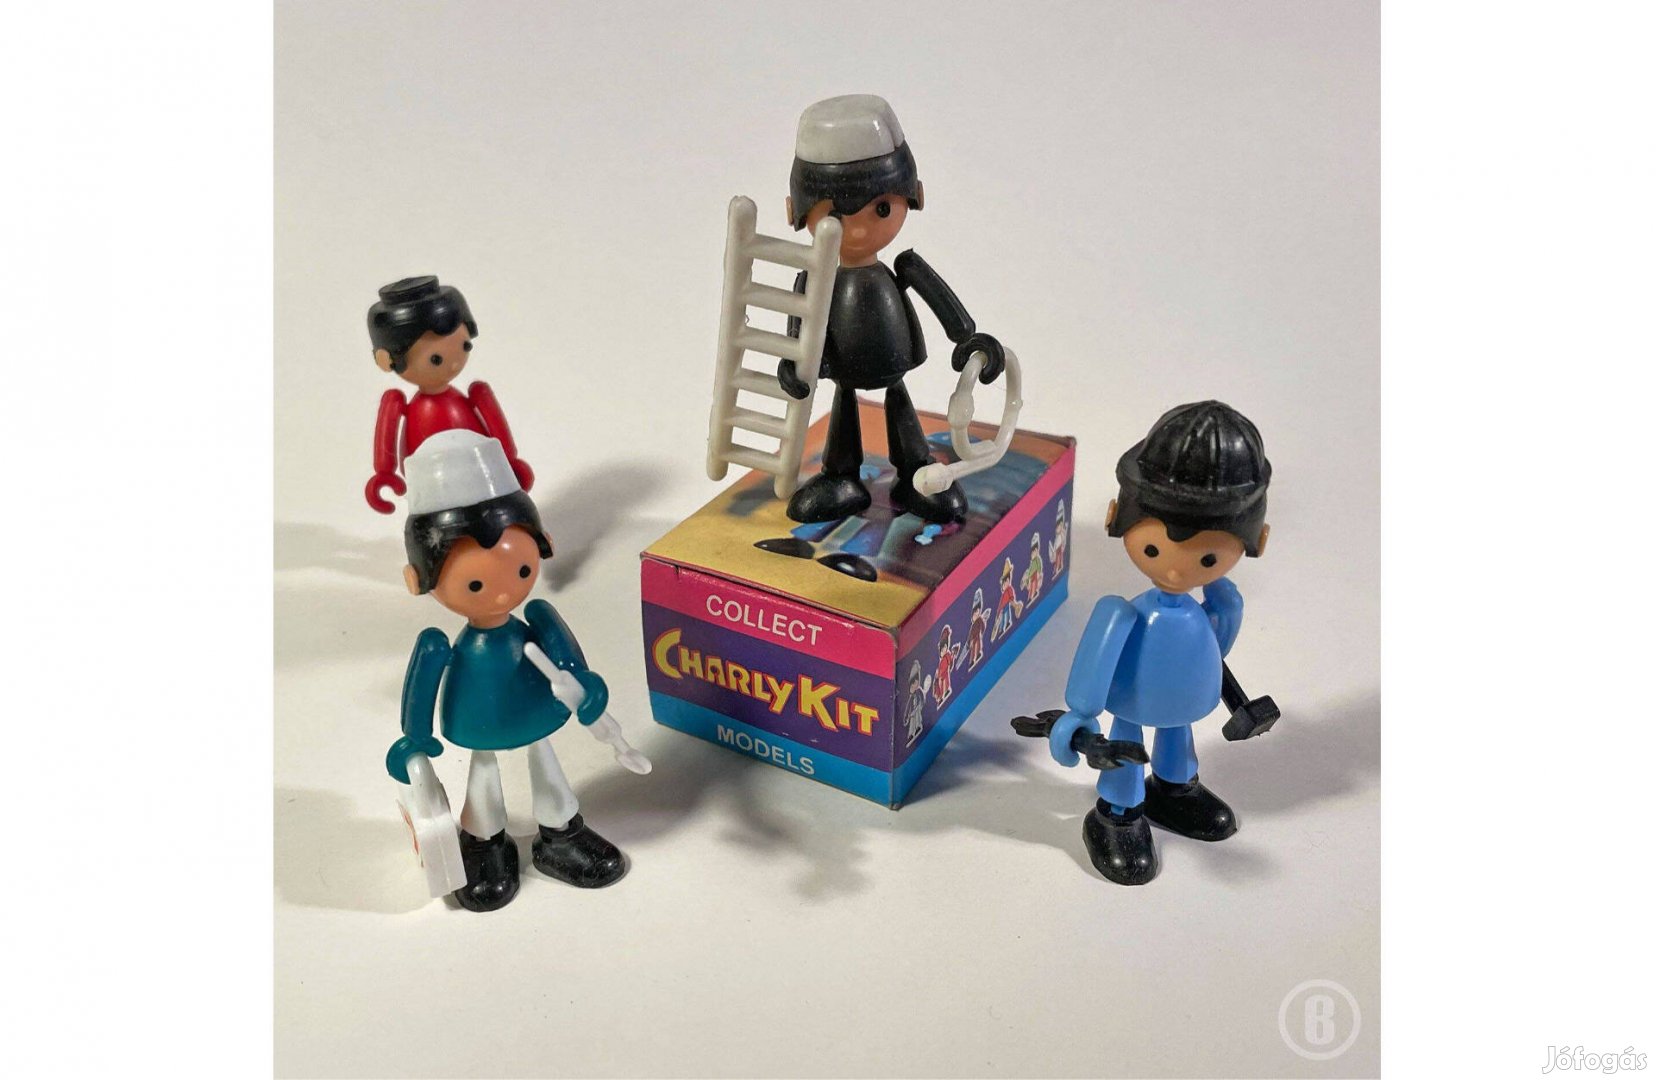 Charly Kit - 5,5 cm-es Parány Peti szerkezetű figurák